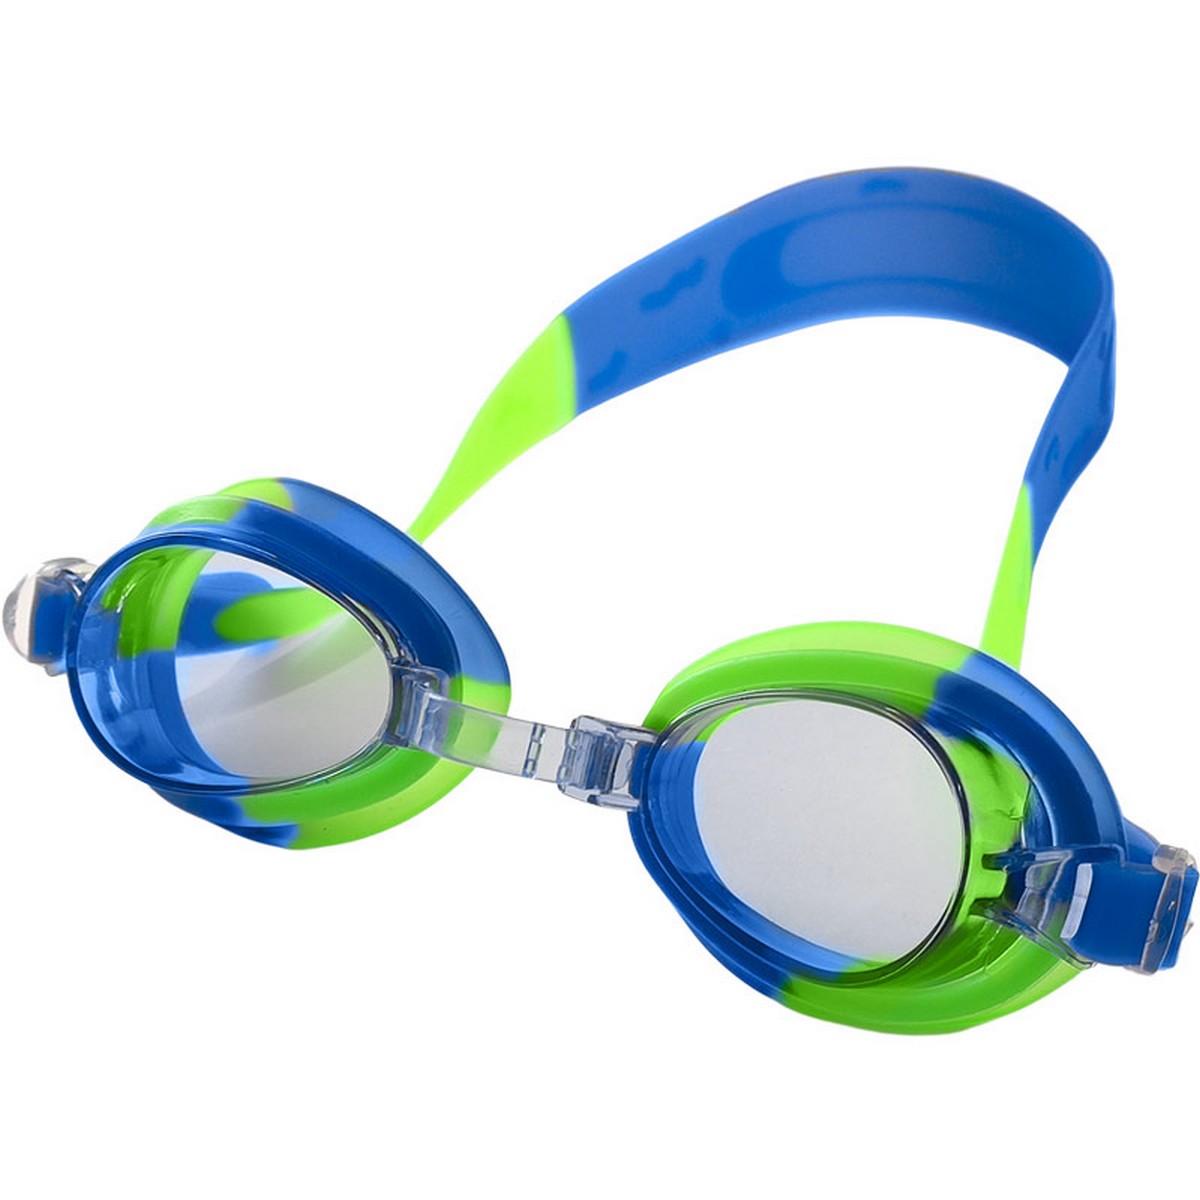 Купить Очки для плавания юниорские Sportex E39663 сине-зеленый,